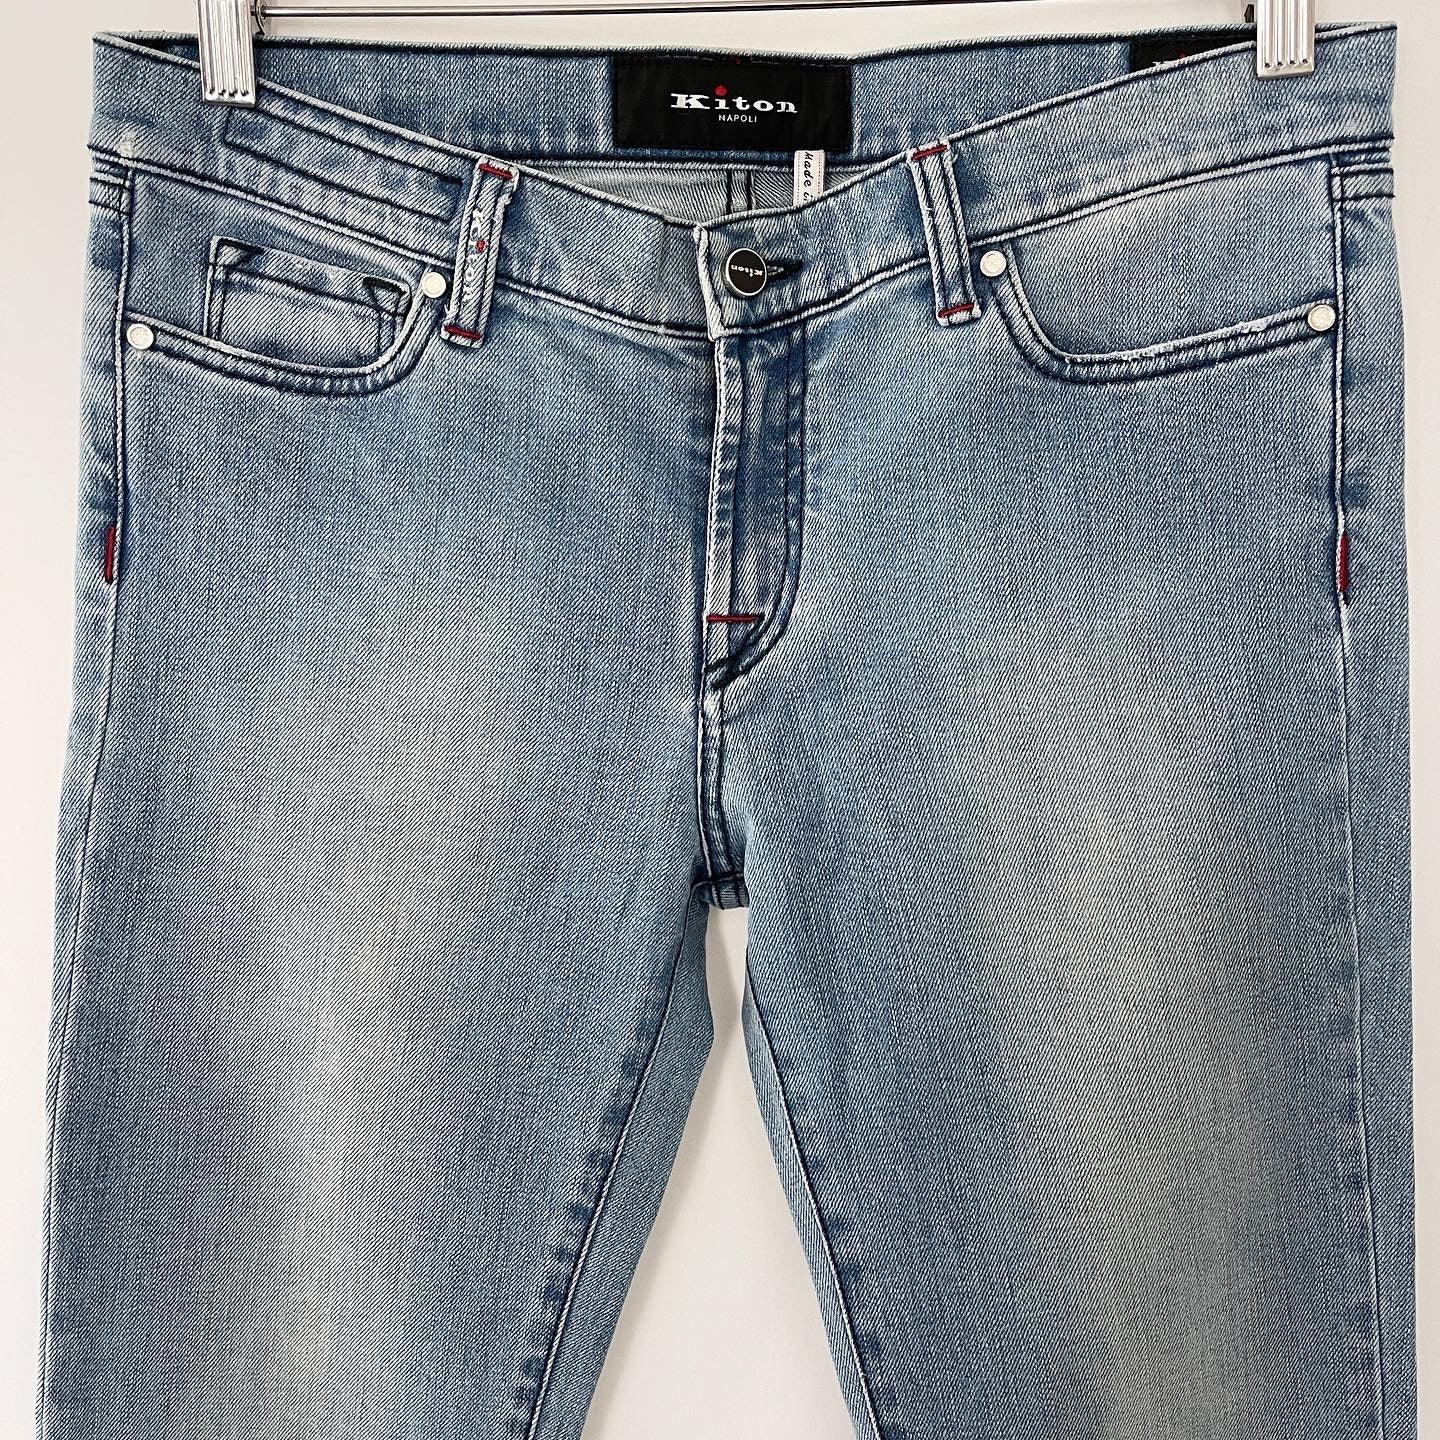 KITON - KITON Jeans - AVVIIVVA.COM